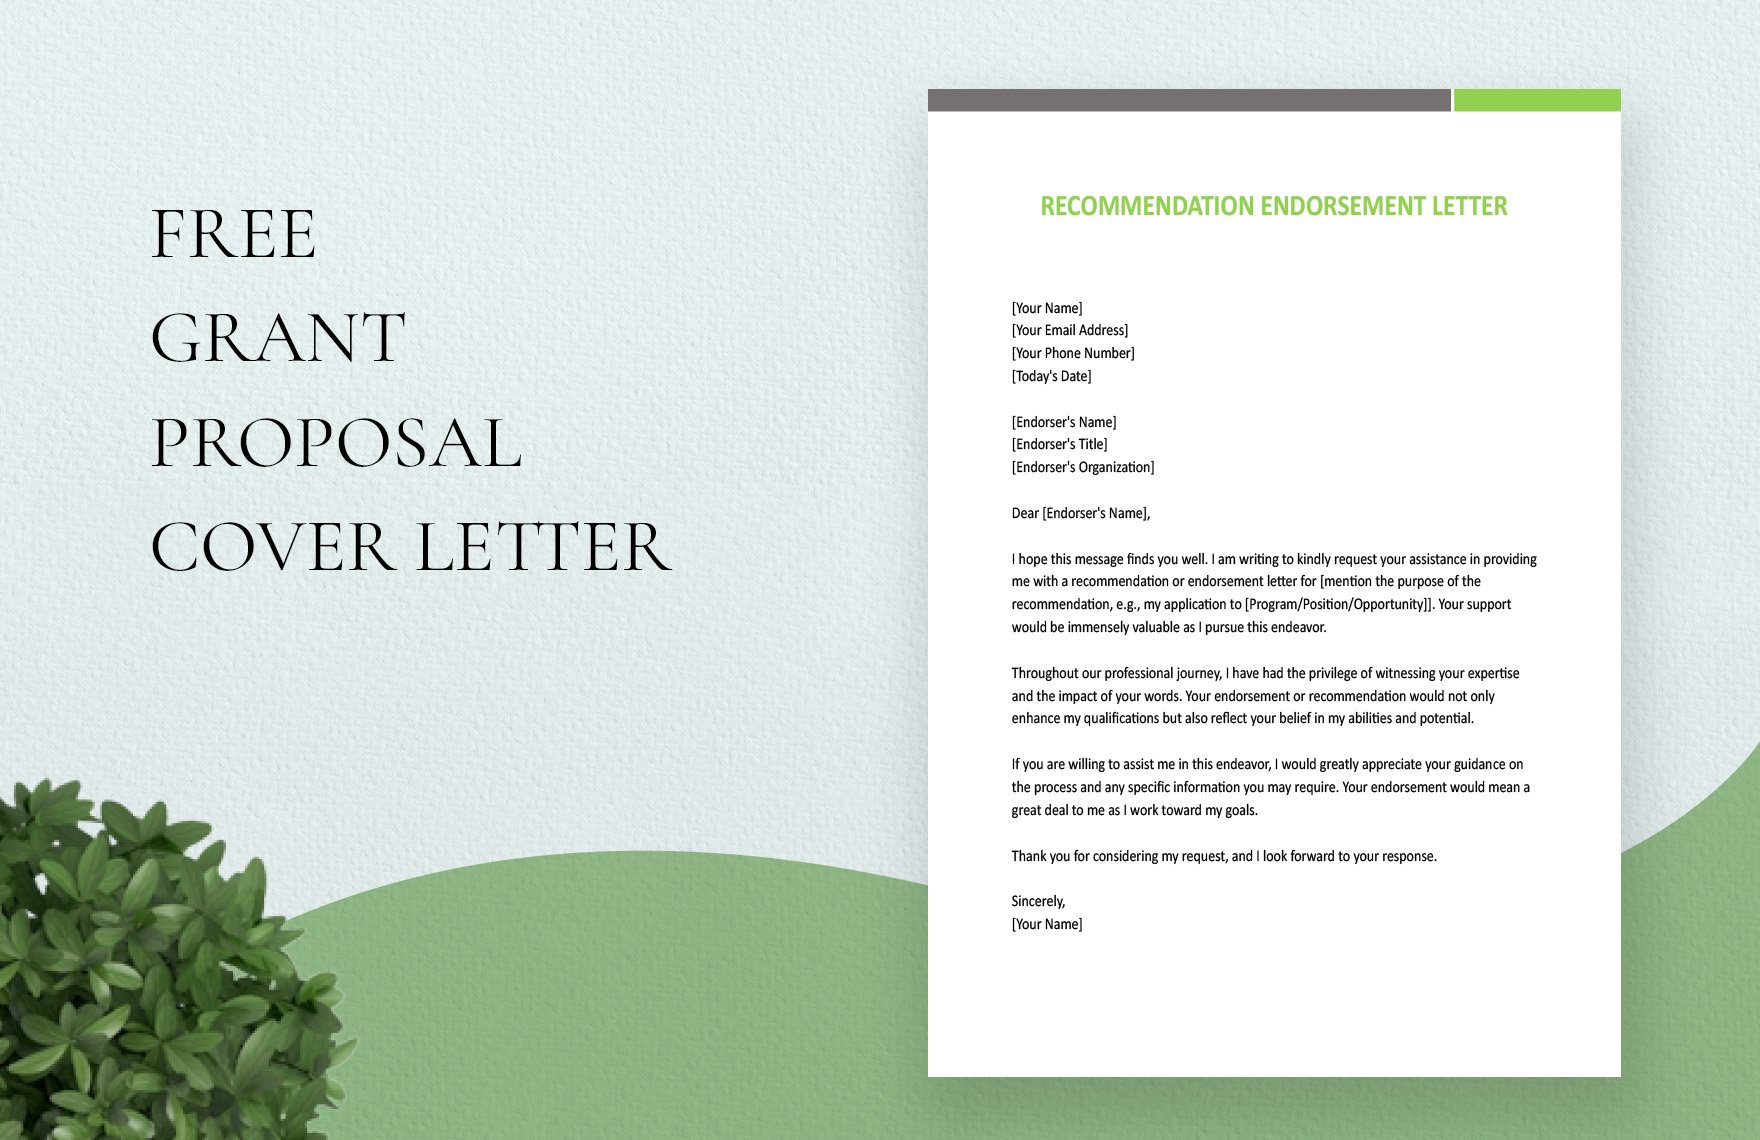 Recommendation Endorsement Letter